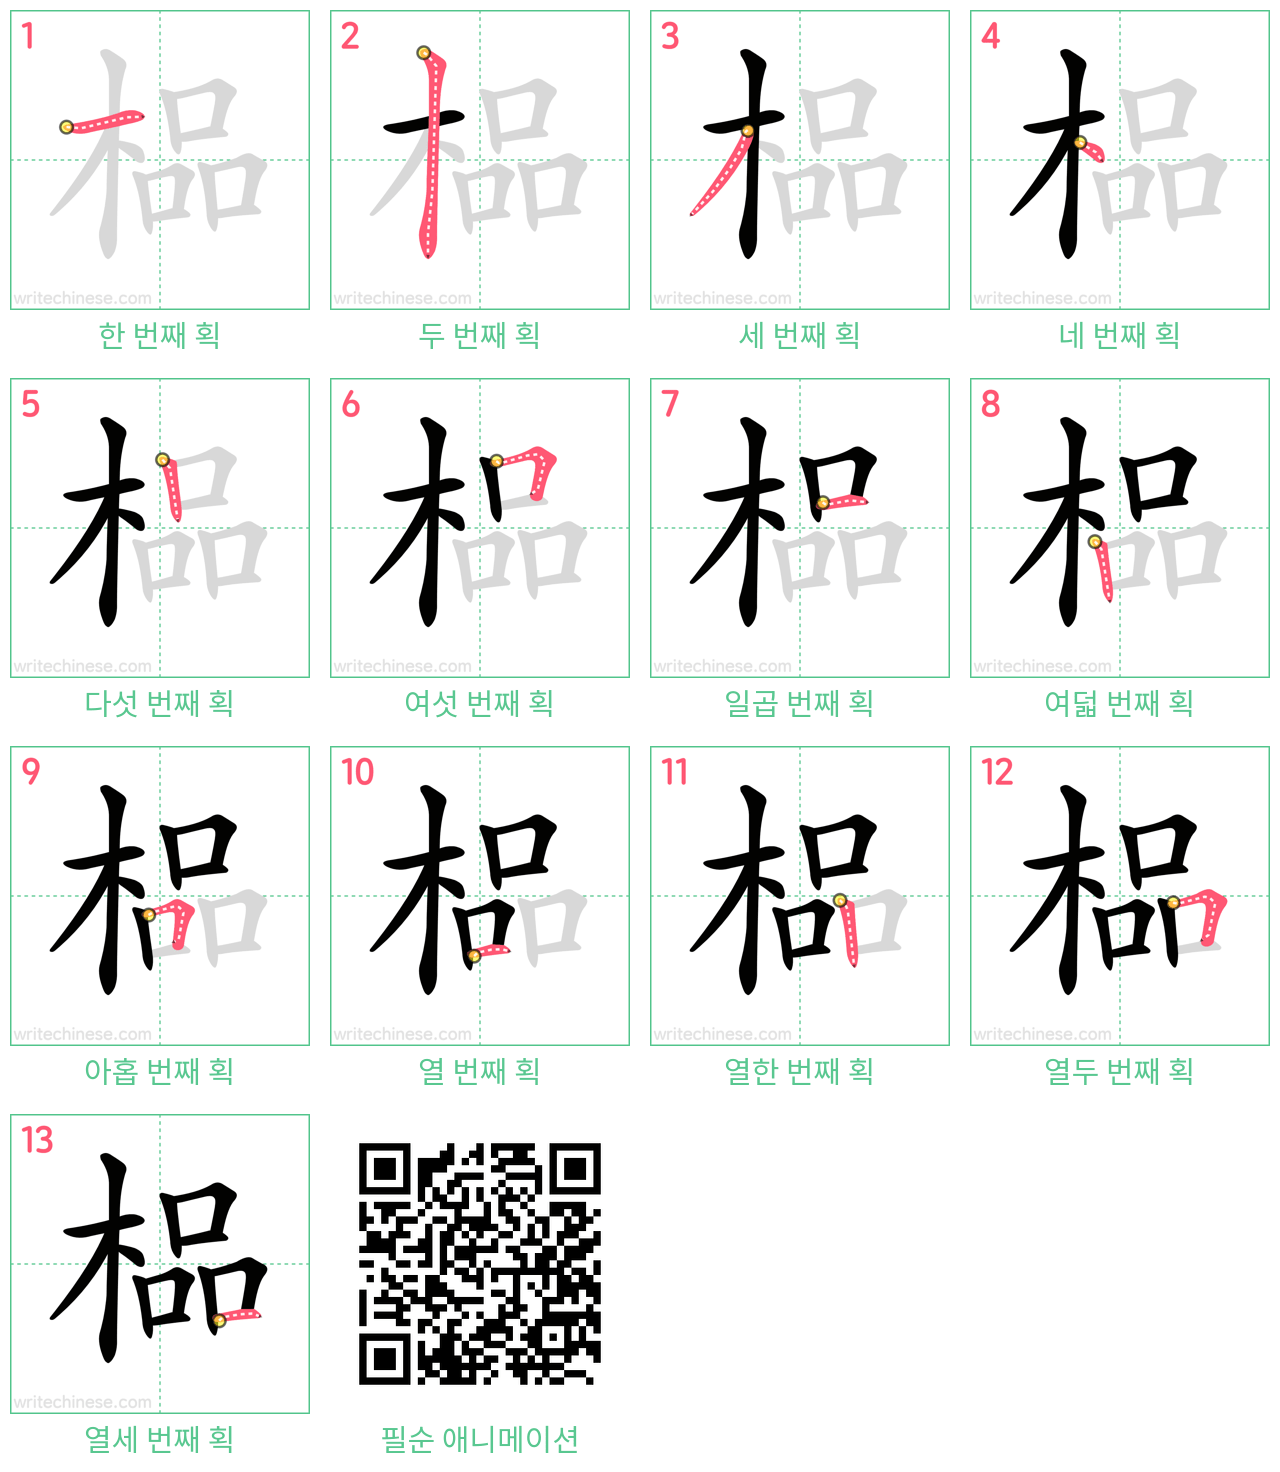 榀 step-by-step stroke order diagrams